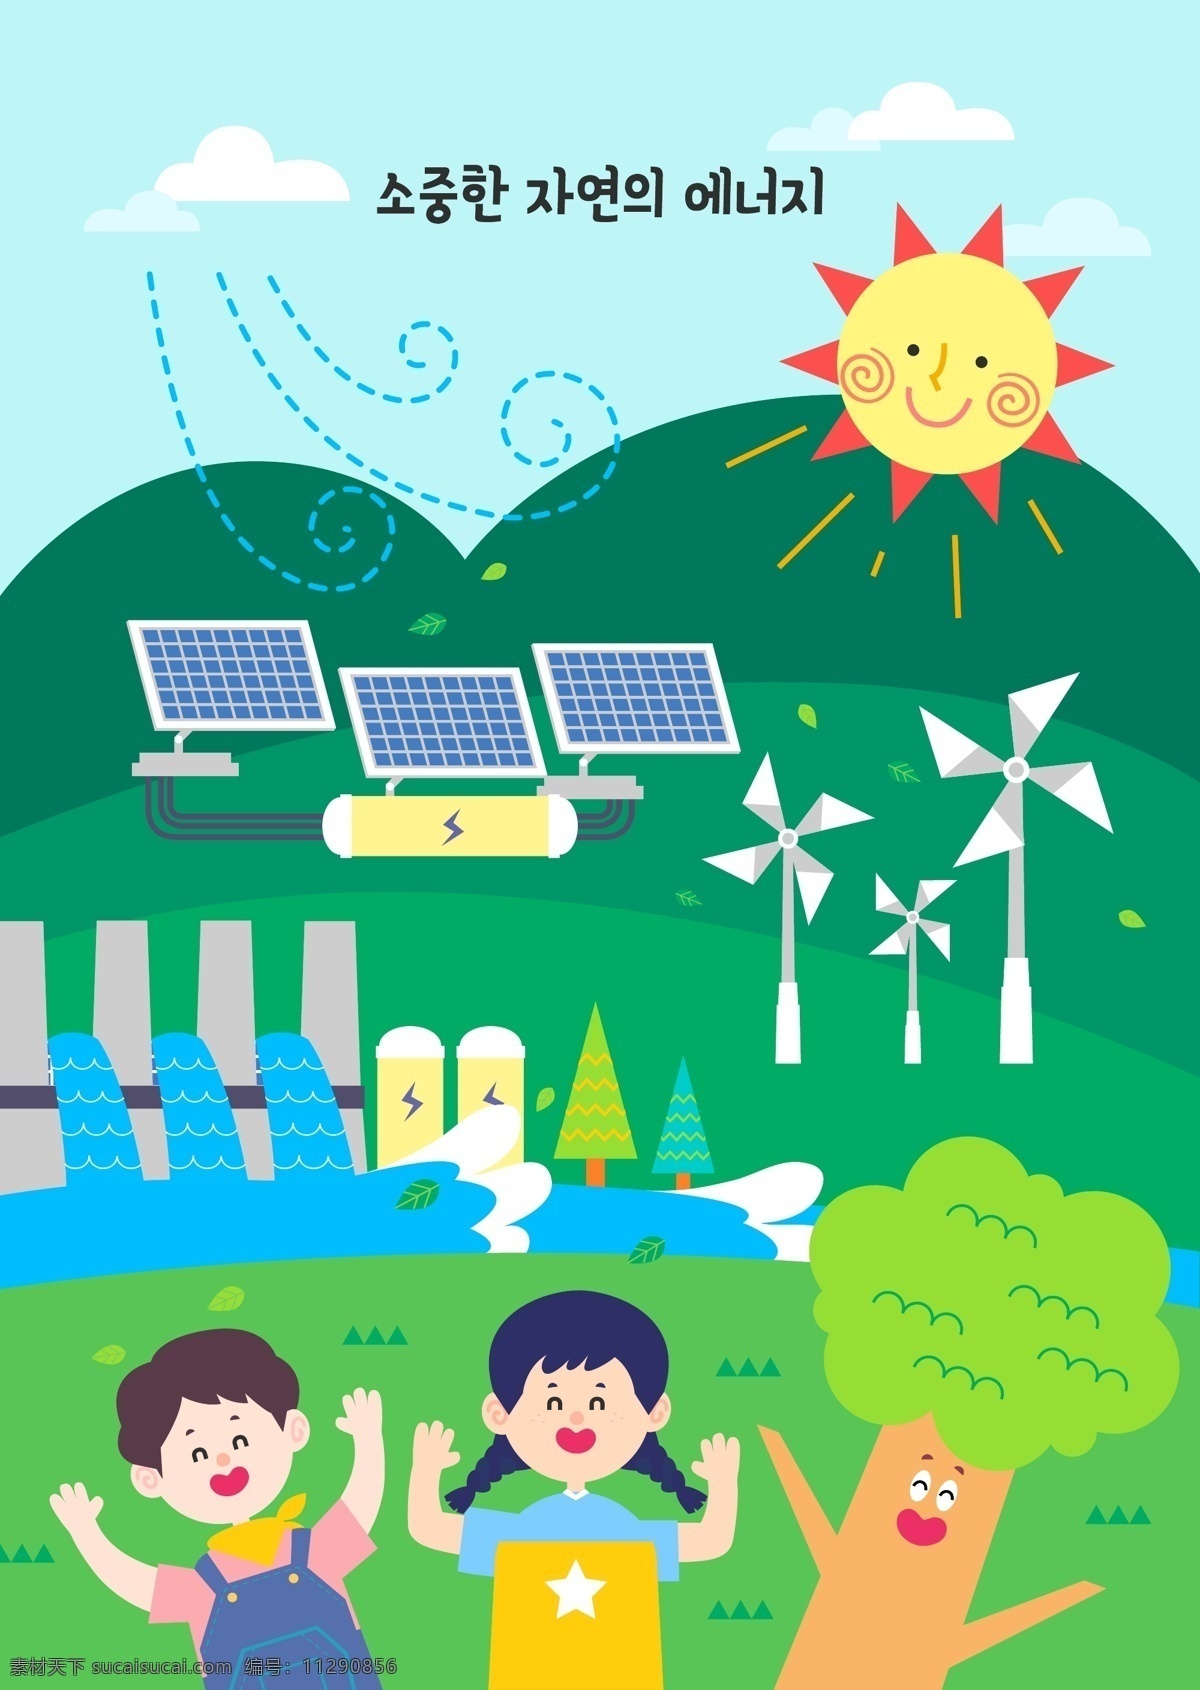 卡通 生态保护 卡通生态保护 卡通生态 儿童 人物 保护 环境 空气 卡哇伊 绿色 环保 清新 氧气 卡通设计